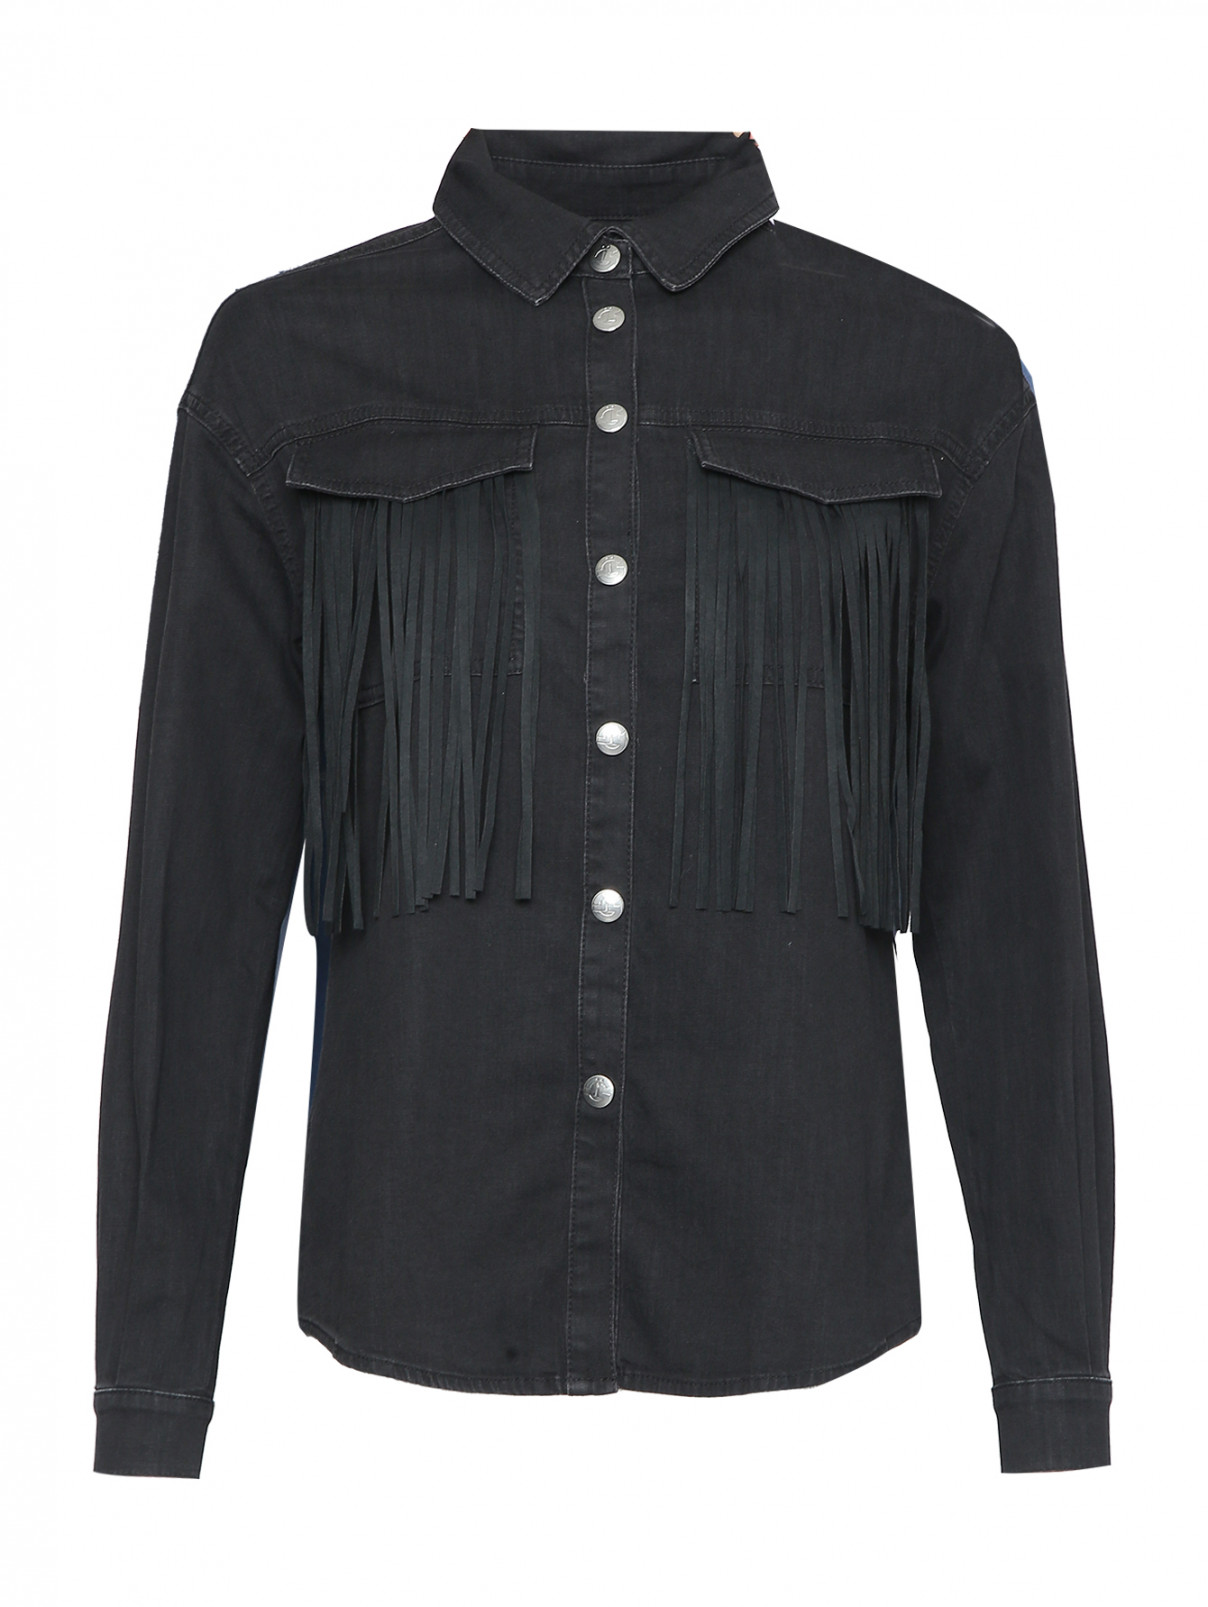 Рубашка с карманами и бахромой GAELLE PARIS  –  Общий вид  – Цвет:  Черный